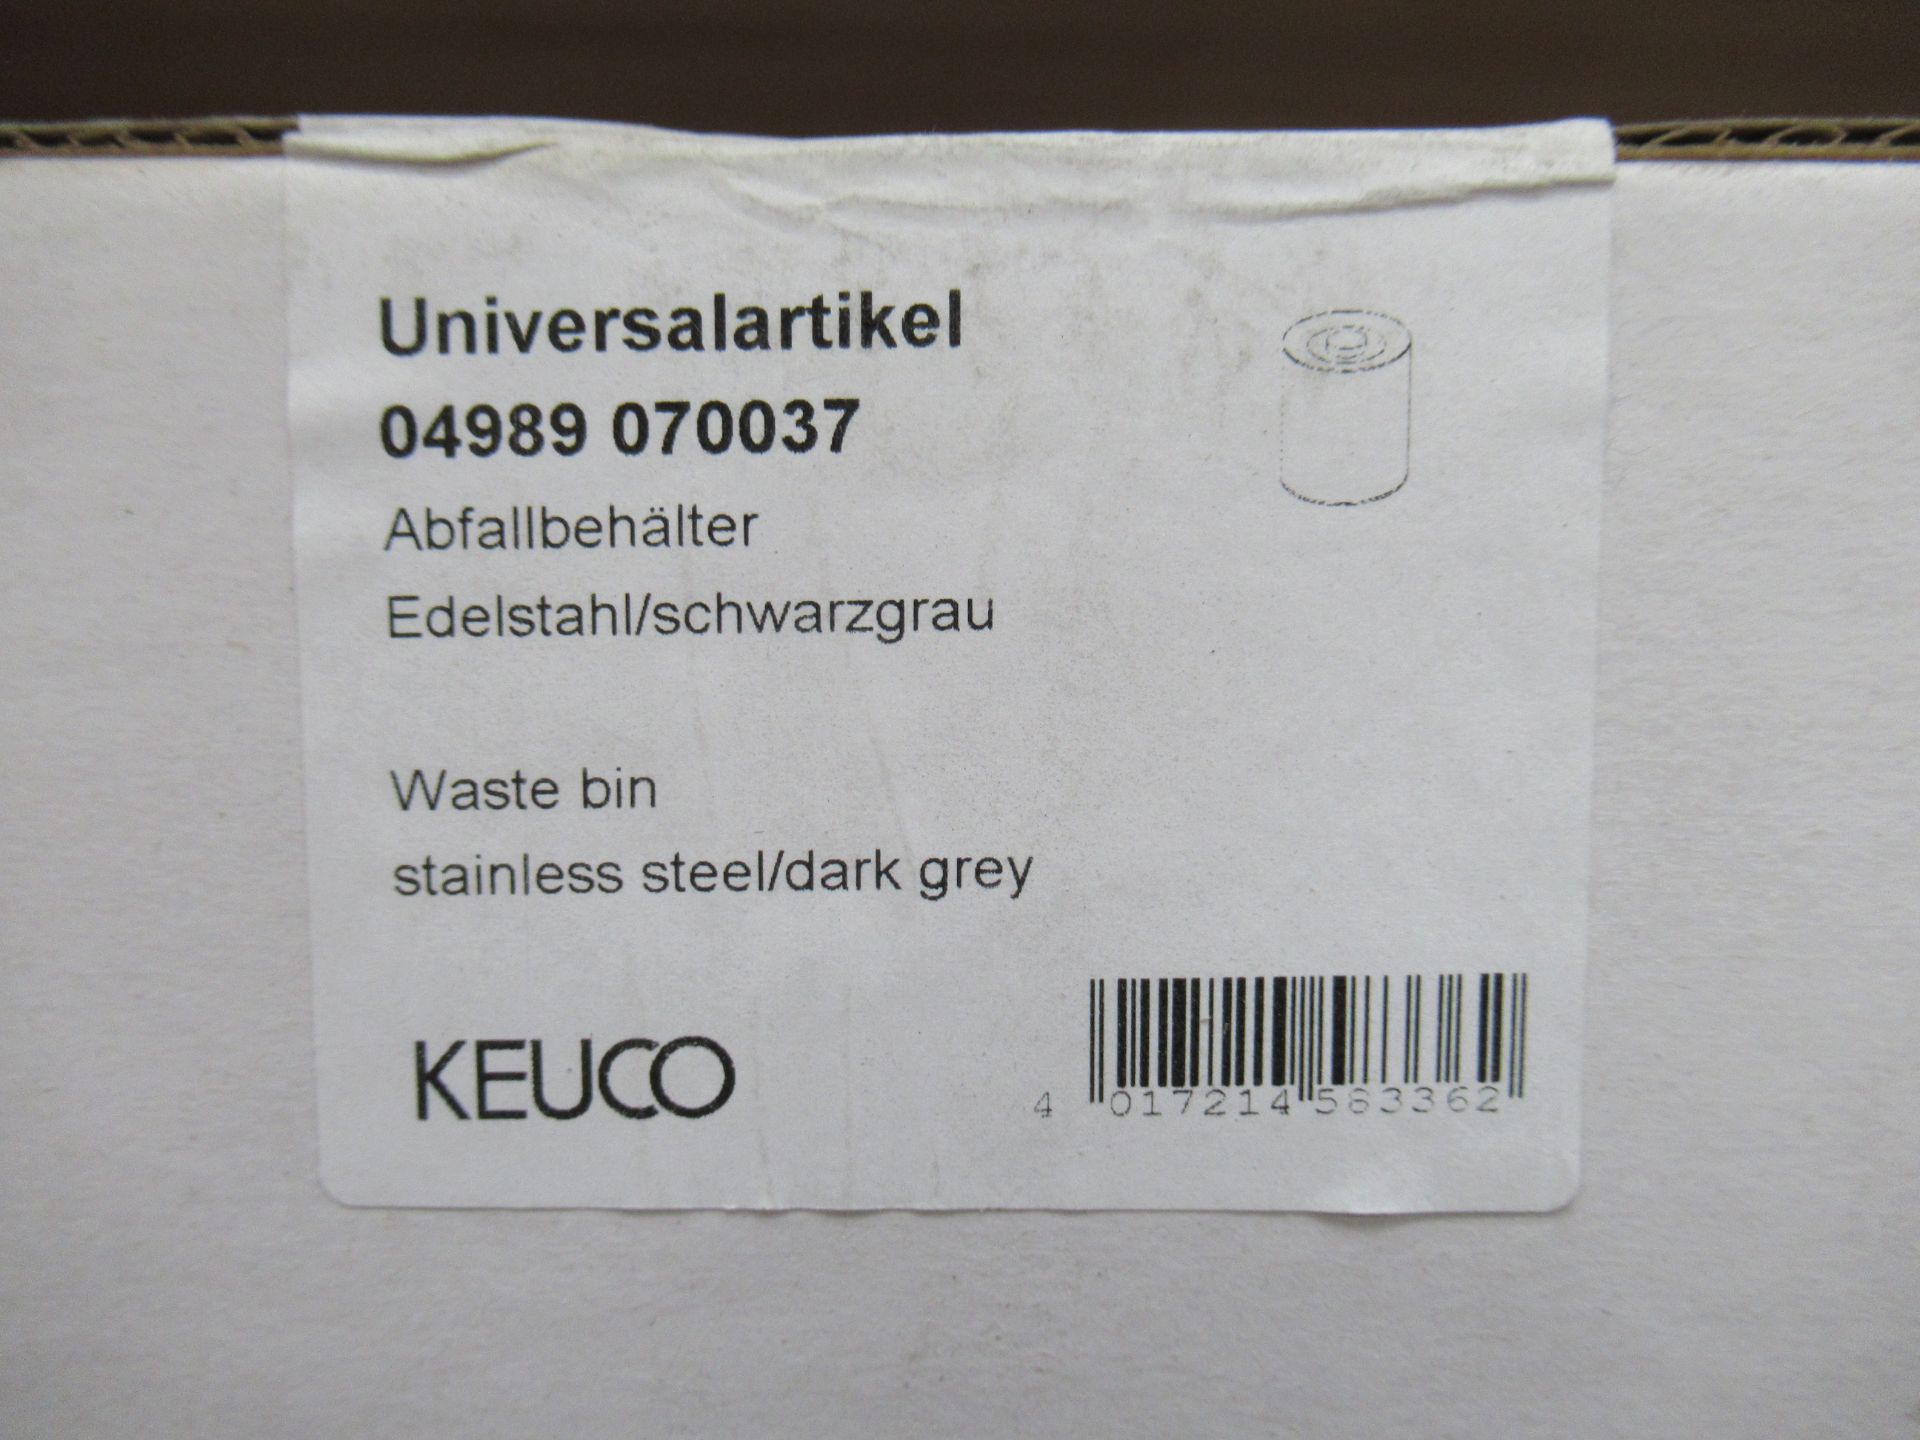 3 x Various Keuco Universal Waste Bins - Image 2 of 4